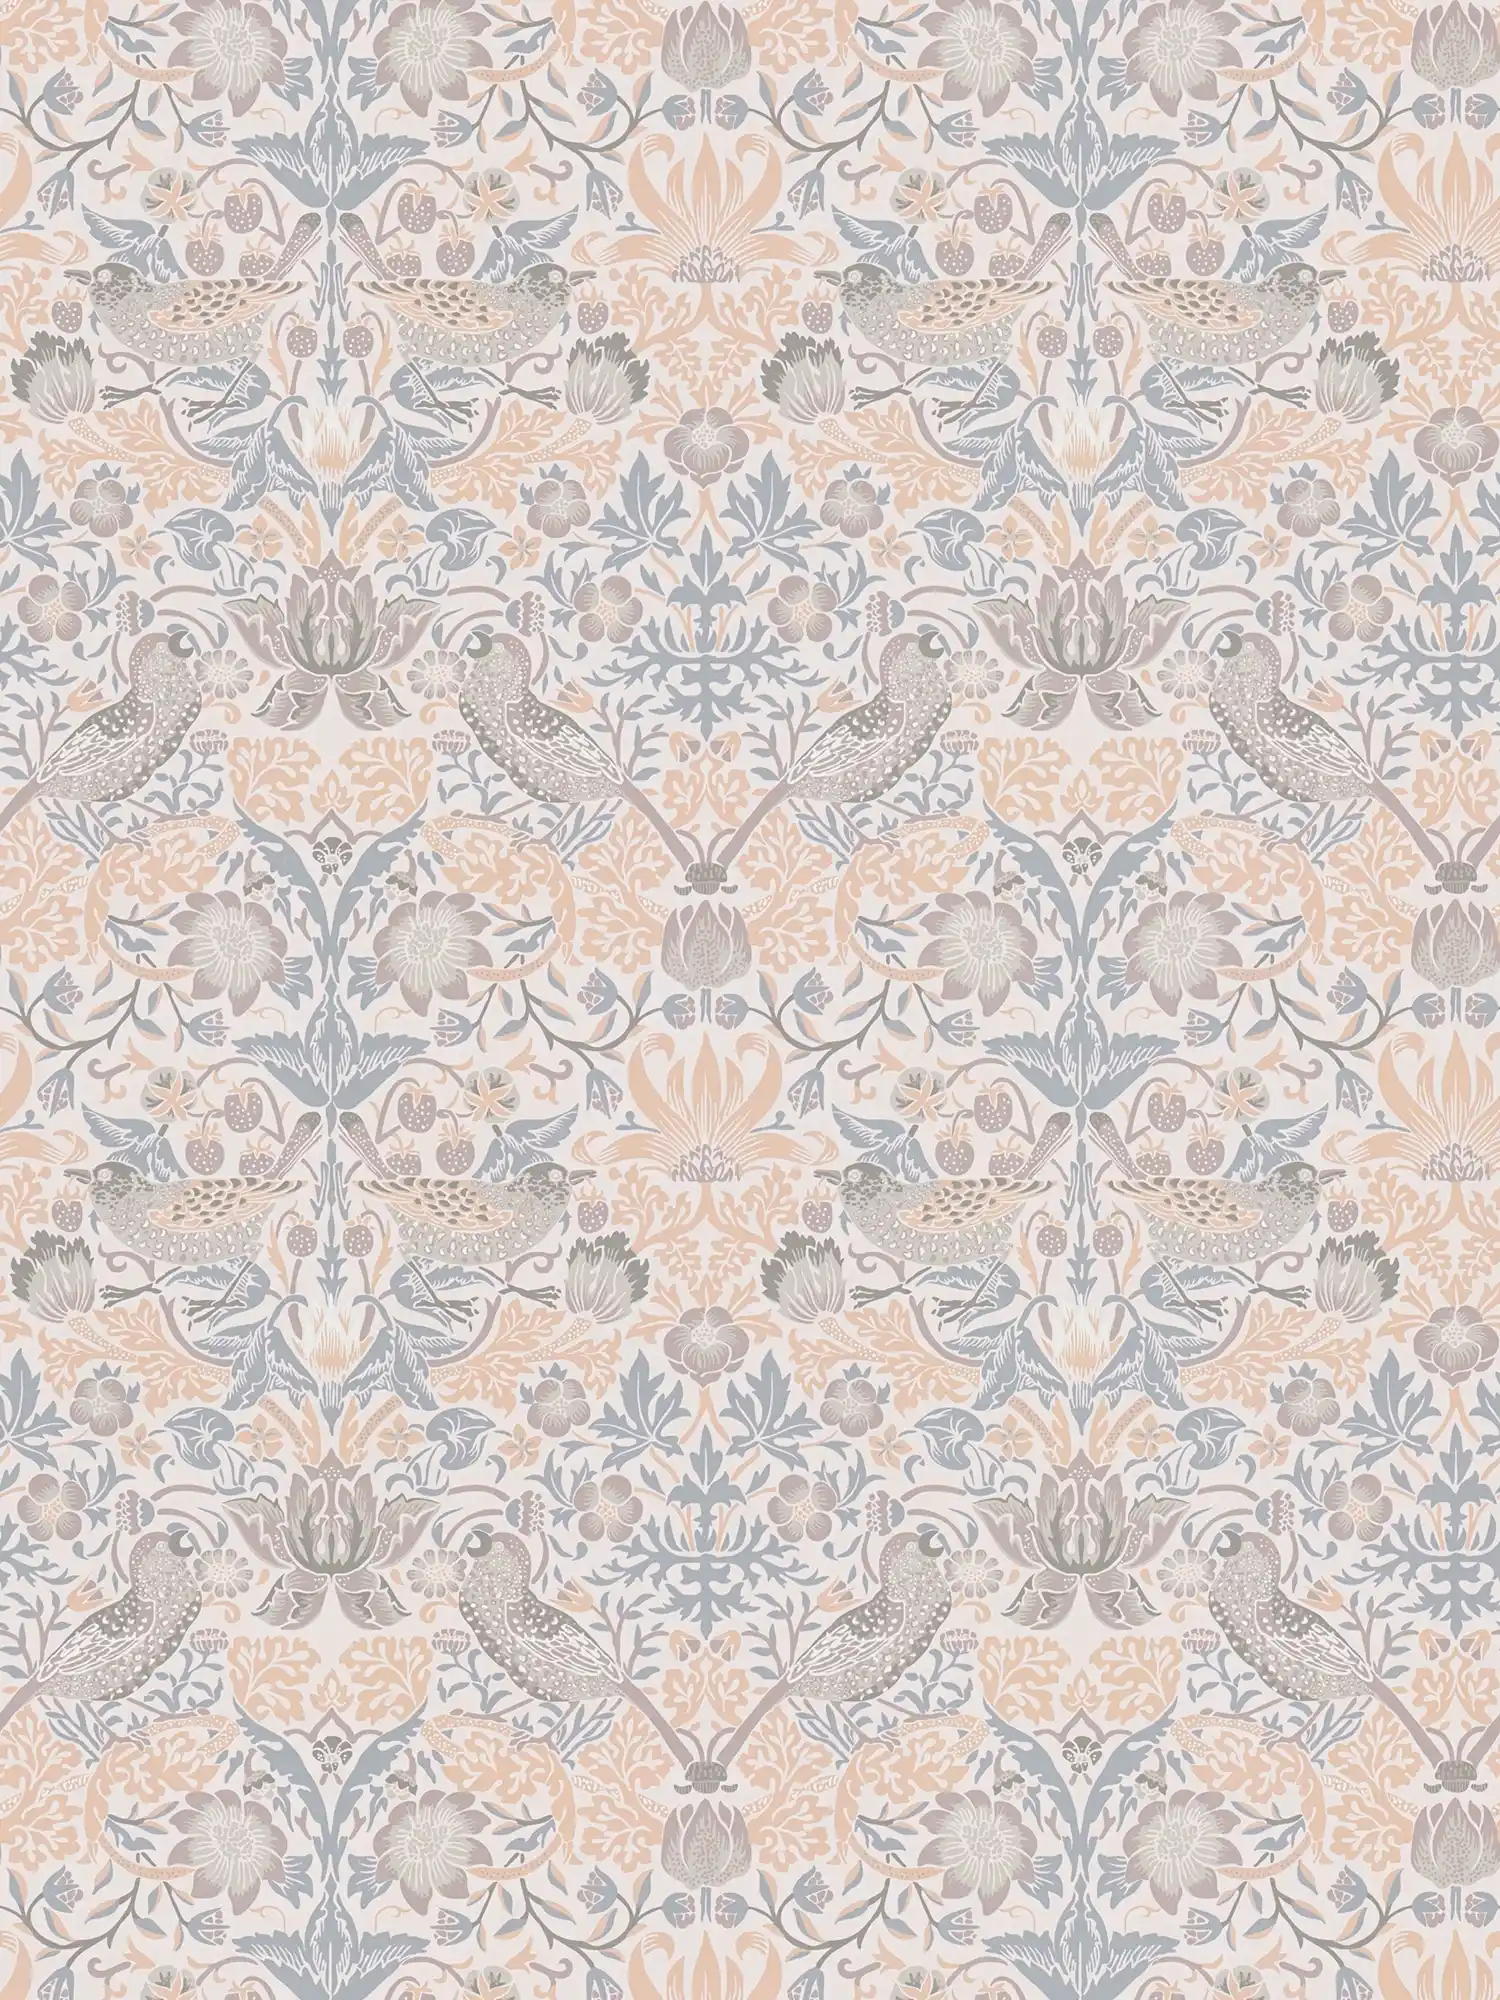             Vliestapete florales Muster mit Vögel – Beige, Grau, Weiß
        